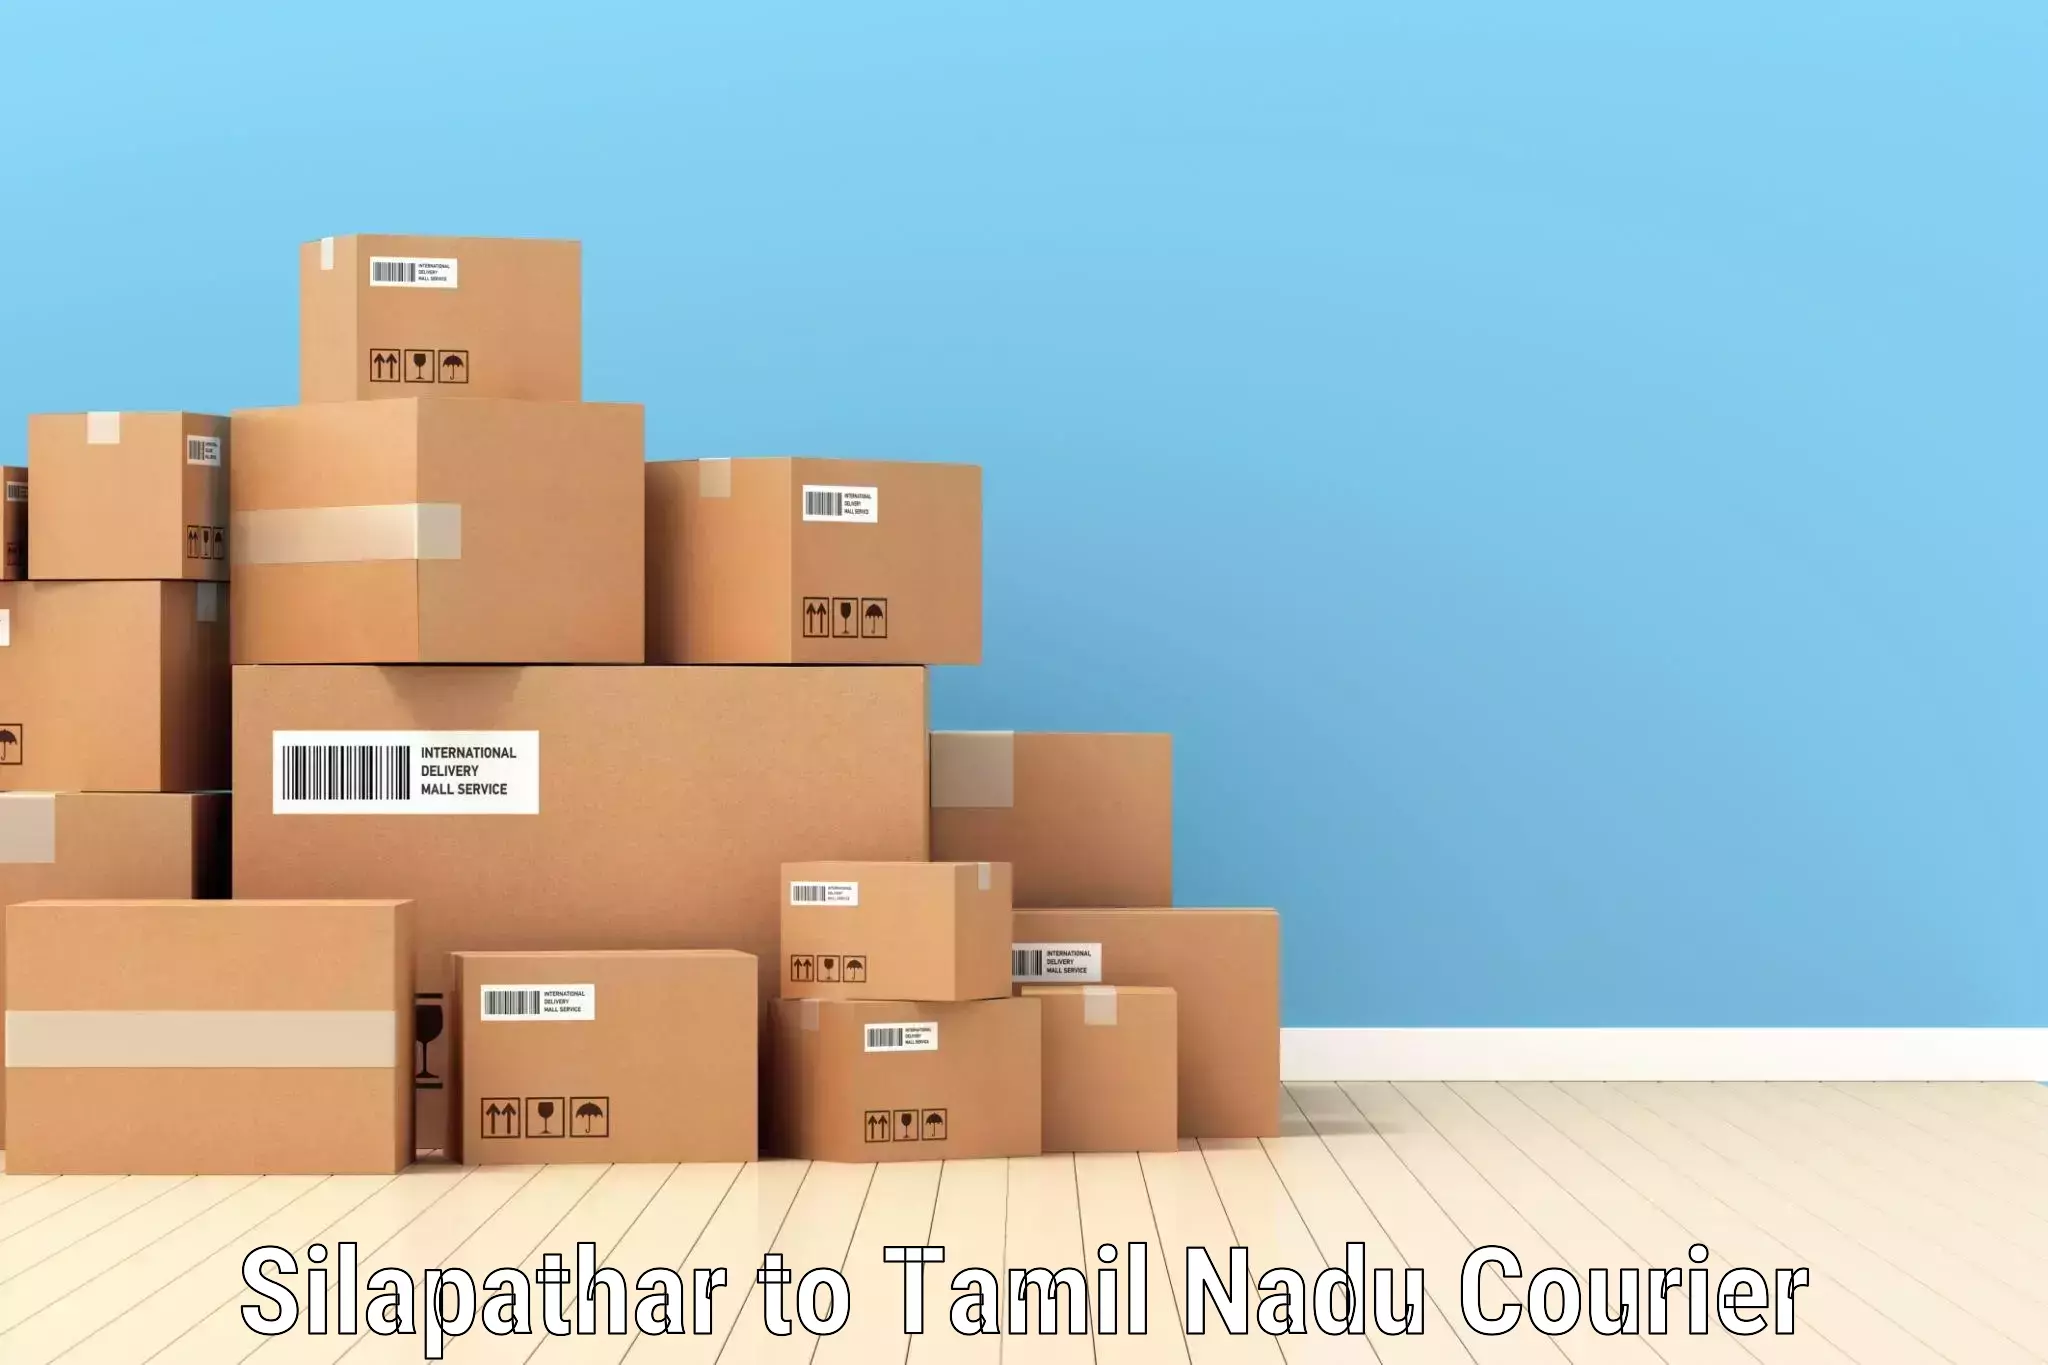 Business shipping needs Silapathar to Vandavasi